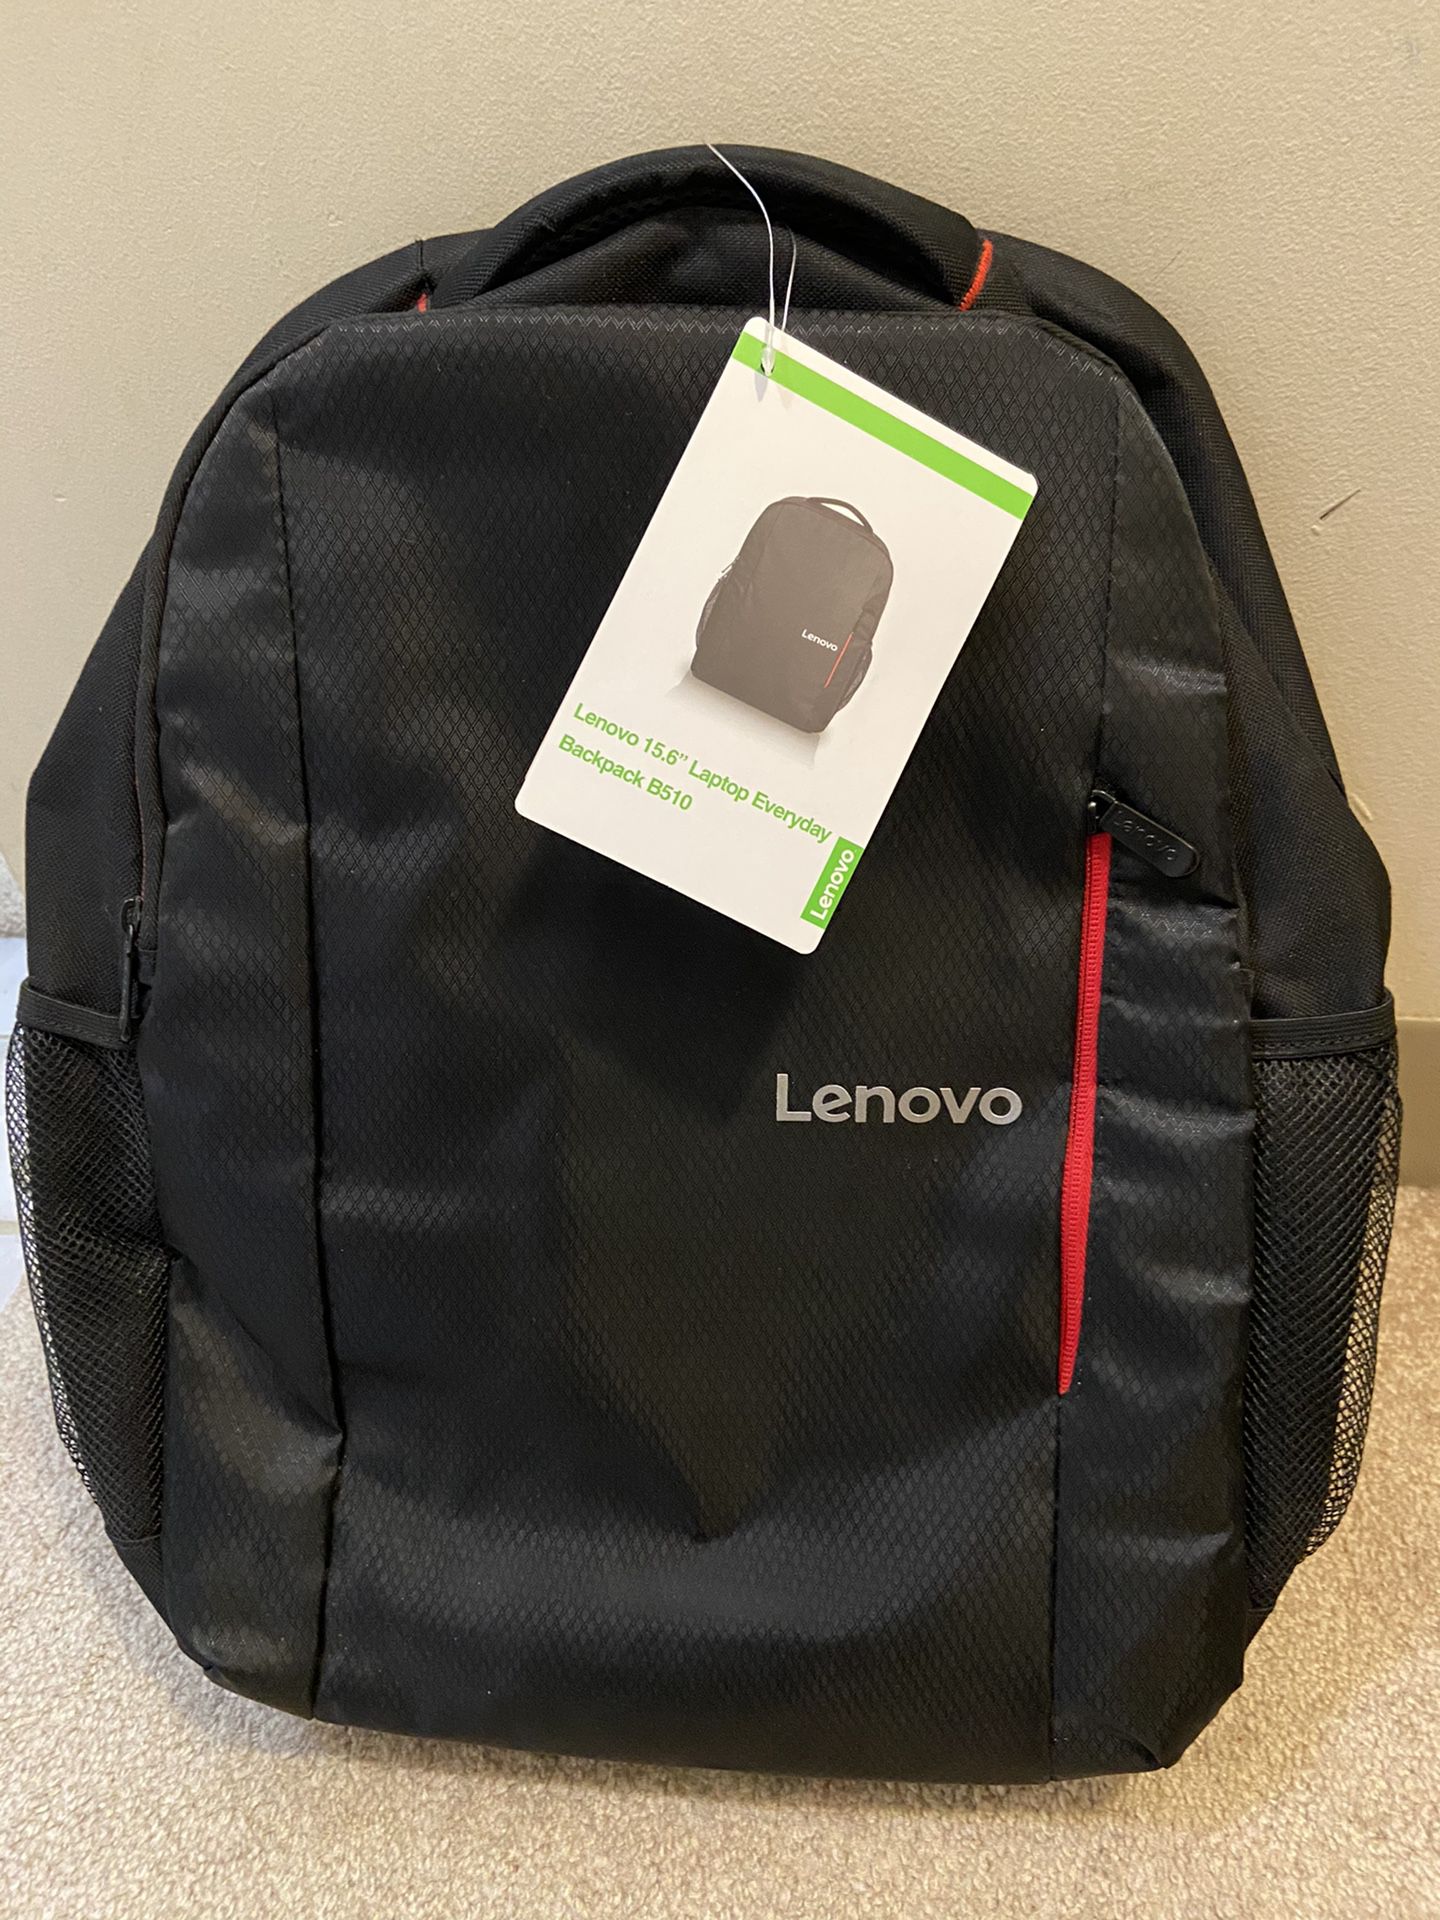 Lenovo 15.6” laptop backpack